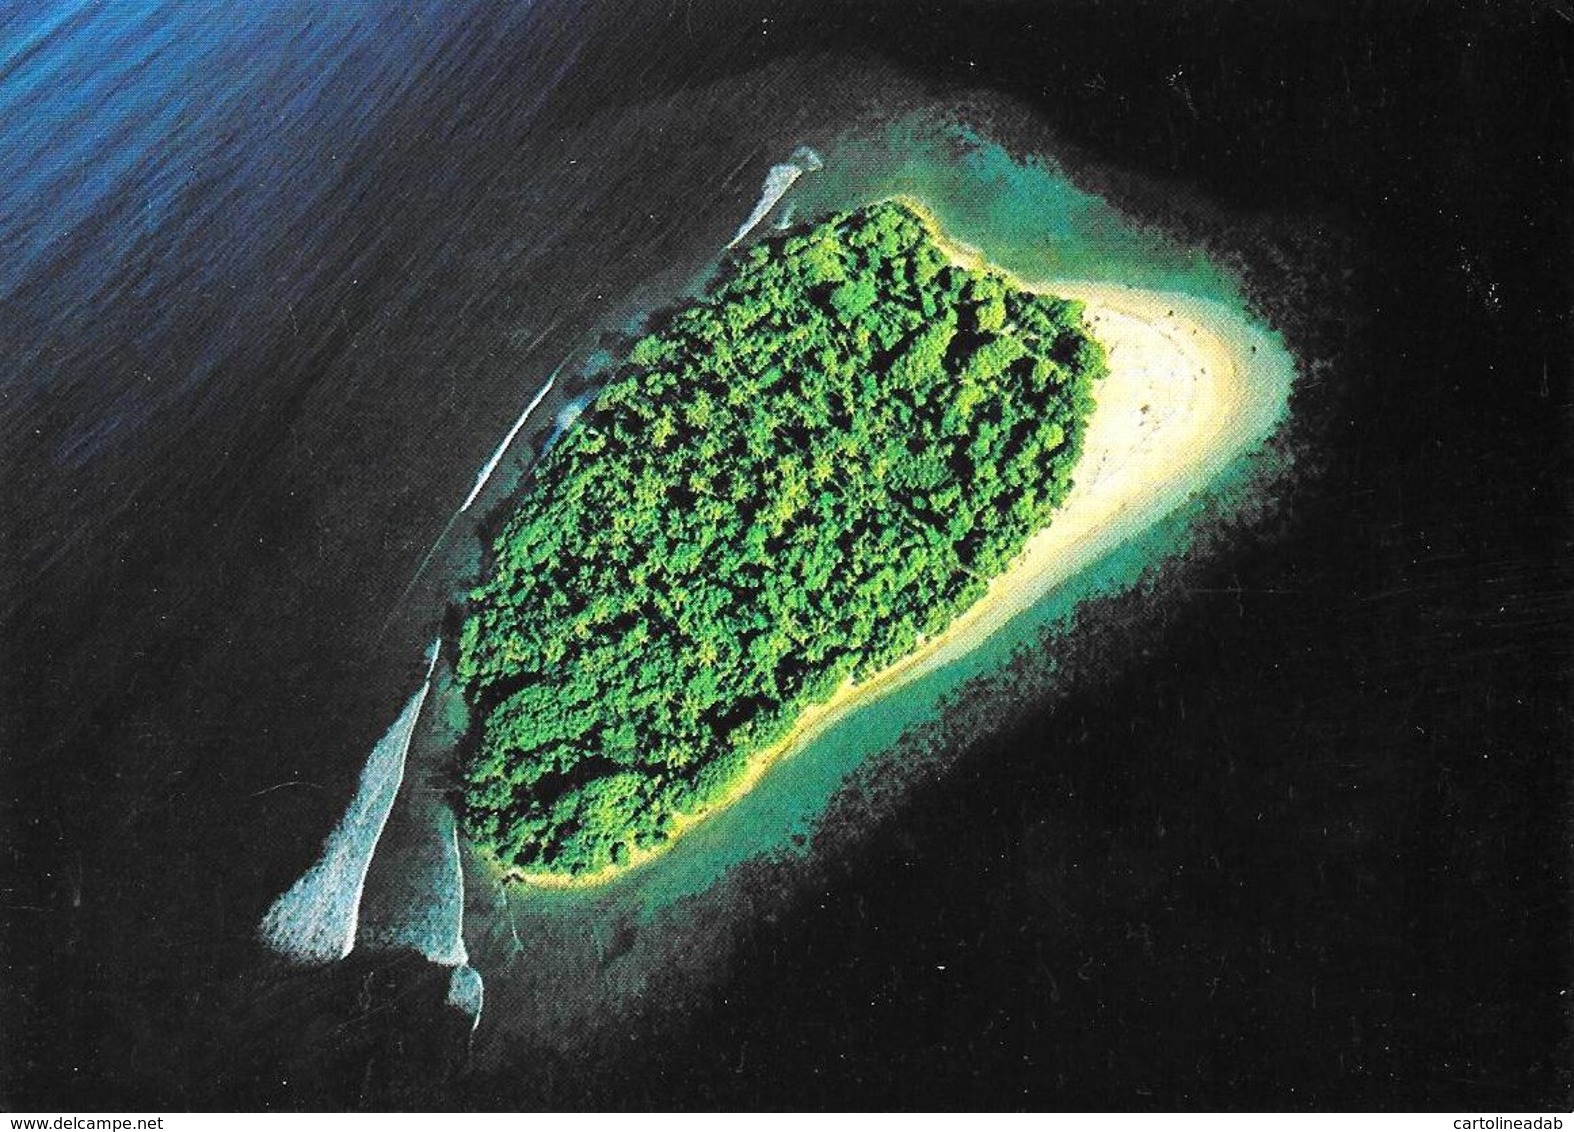 [MD3005] CPM - MALDIVE - UNIHABITED ISLAND - ART EDITION - BY ERIC KLEMM - Non Viaggiata - Maldives